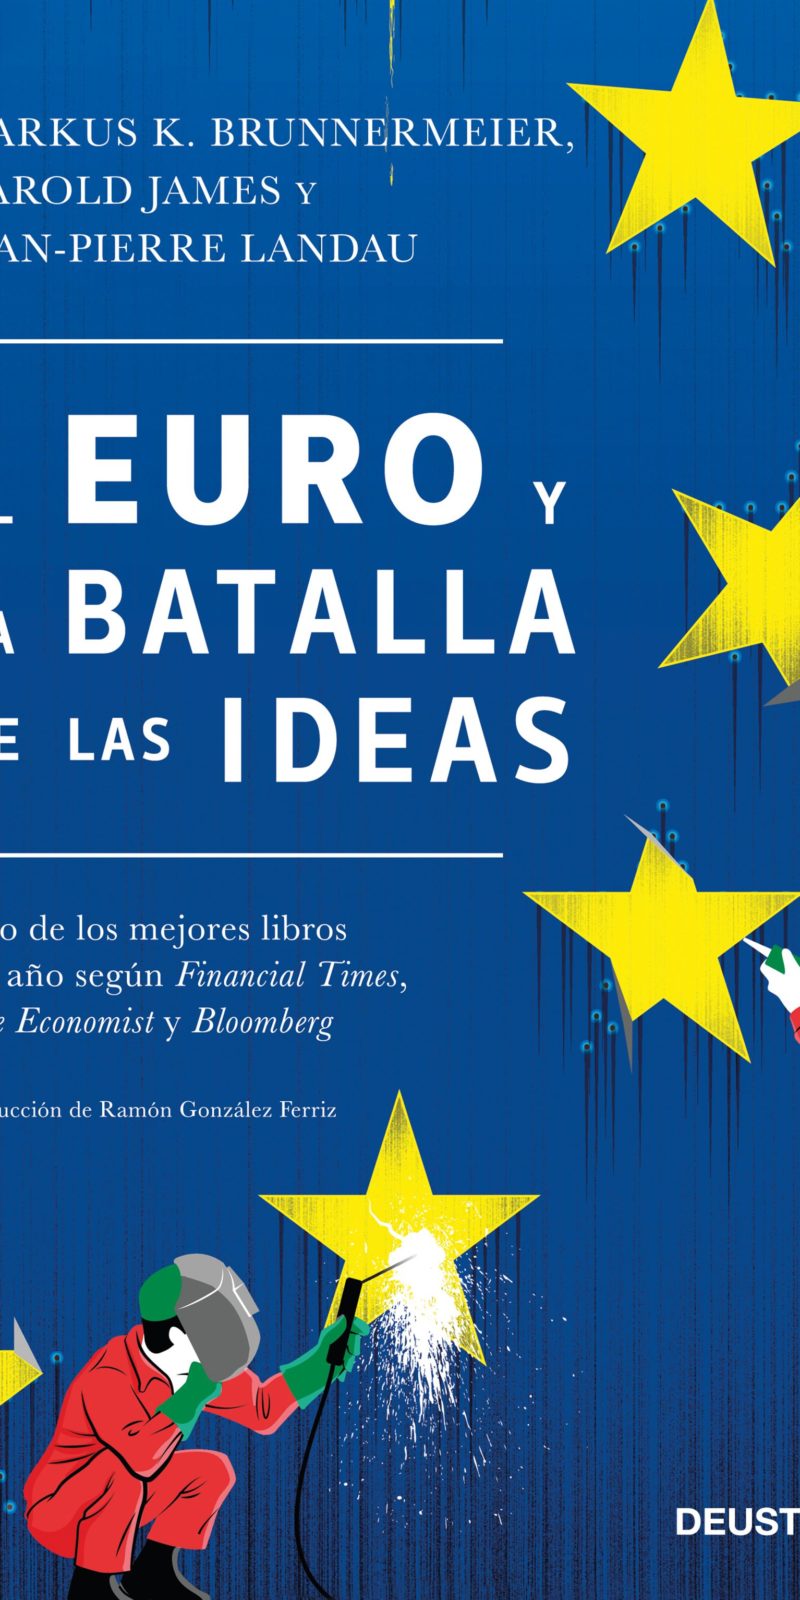 EURO BATALLA DE IDEAS